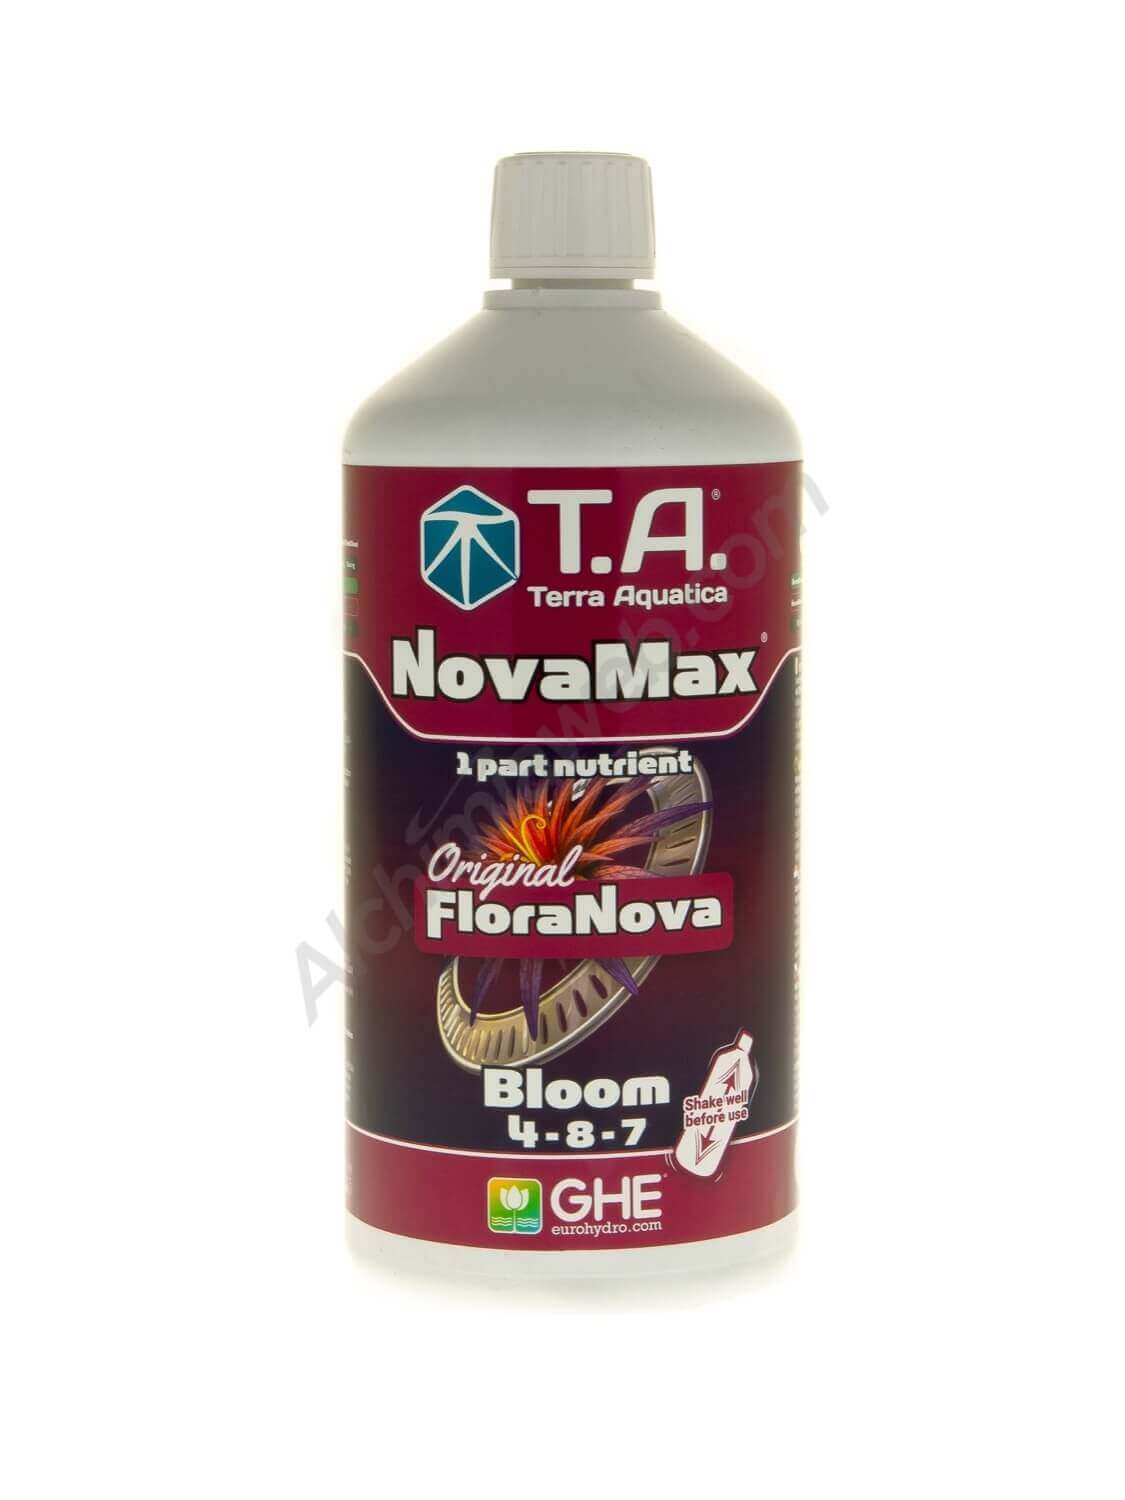 NovaMax Bloom de T.A. (anciennement Floranova® Bloom de GHE)